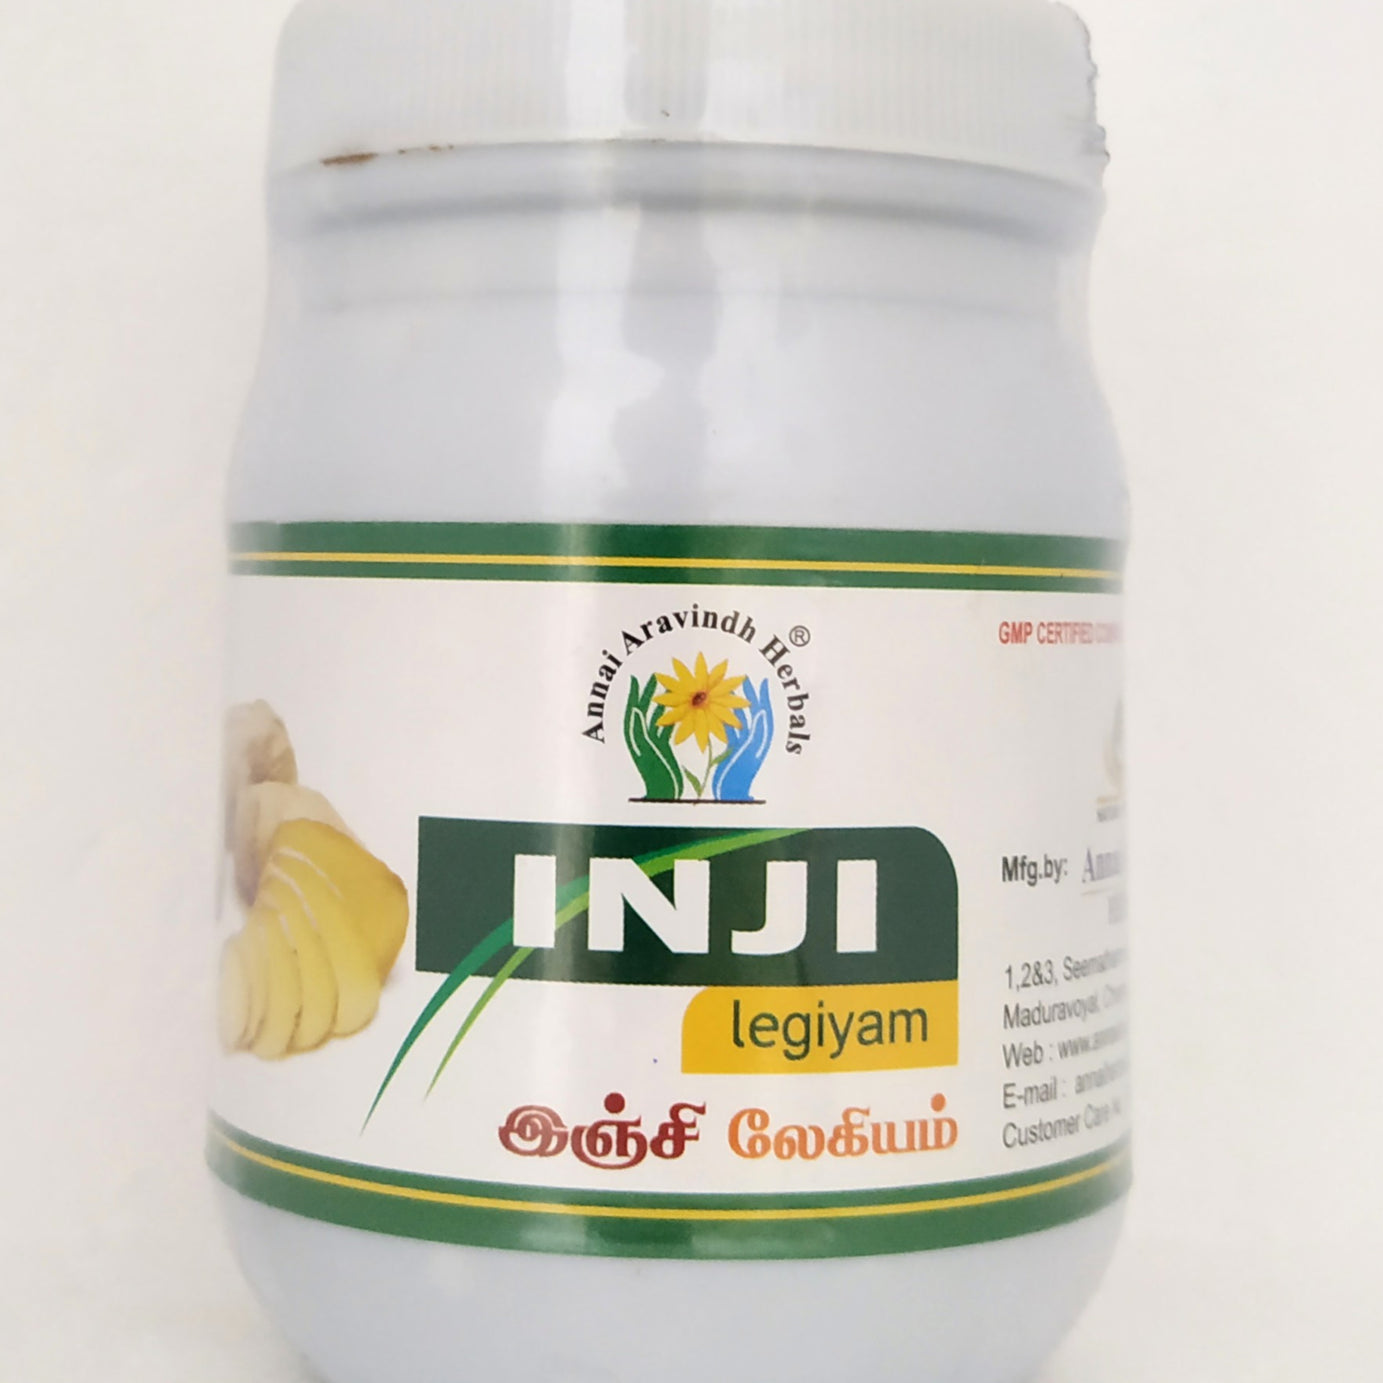 Shop Inji legiyam 250gm at price 240.00 from Annai Aravindh Online - Ayush Care